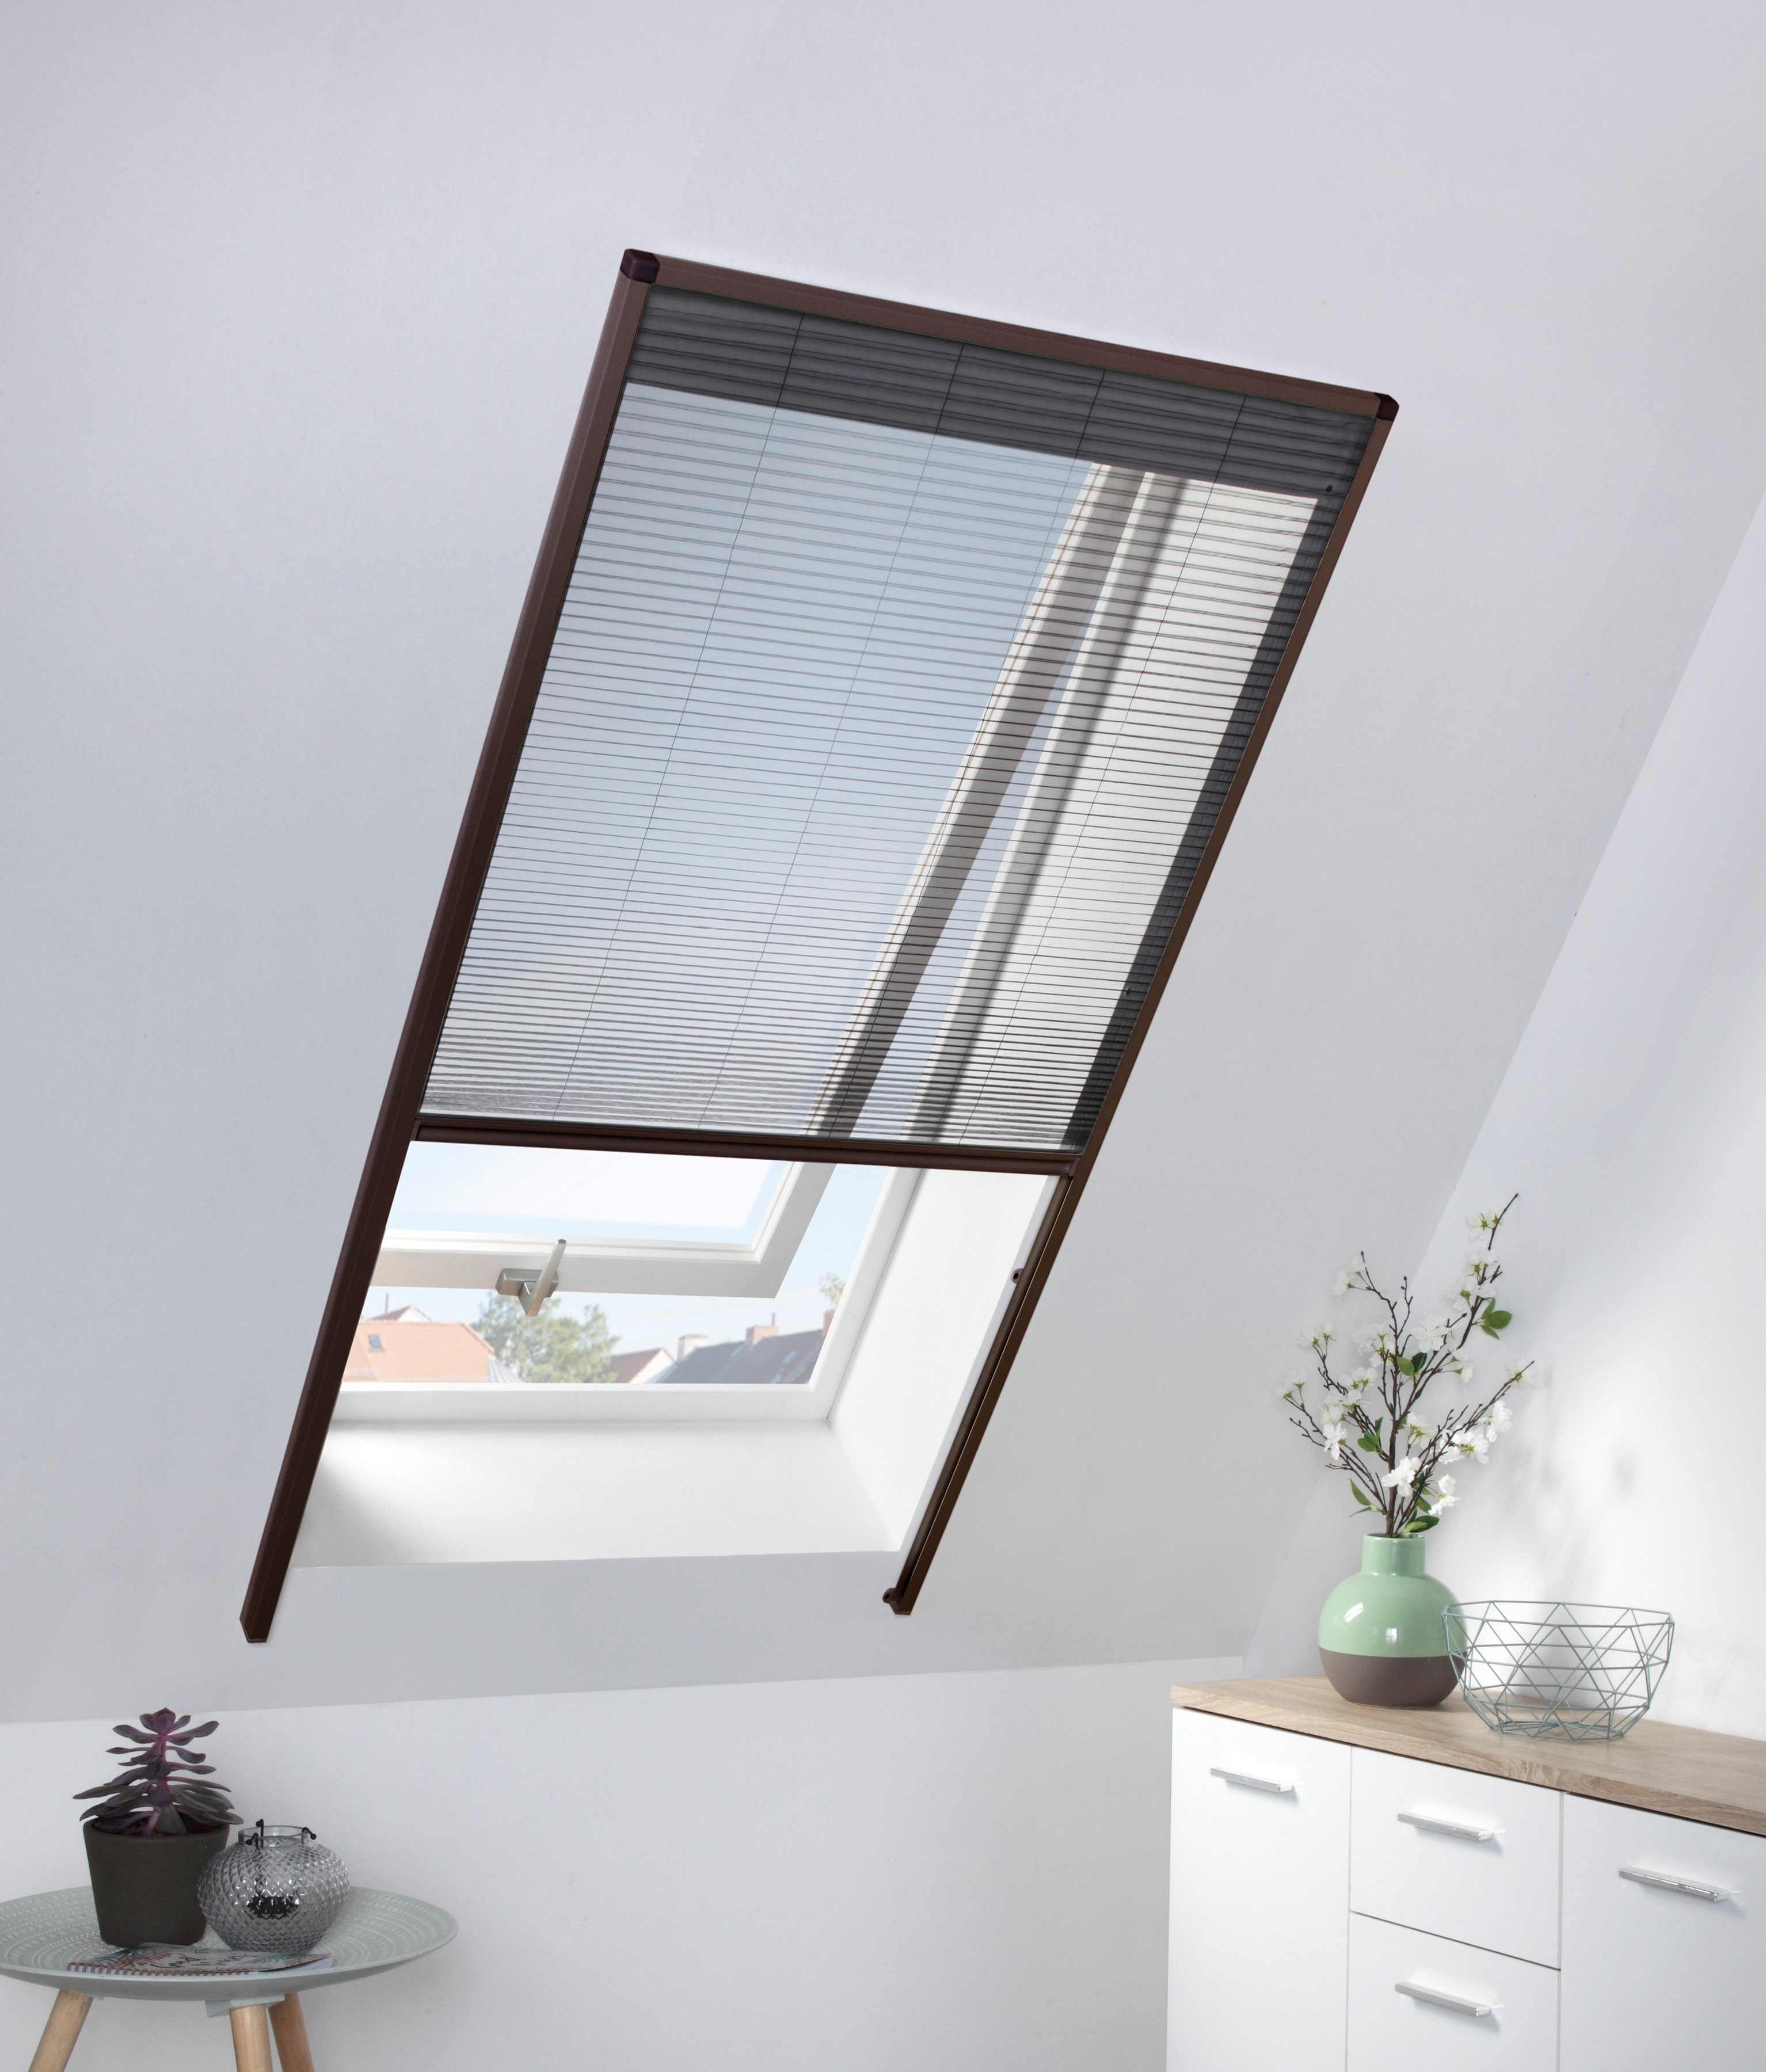 Insektenschutzrollo für Dachfenster, hecht international, transparent,  verschraubt, braun/anthrazit, BxH: 80x160 cm